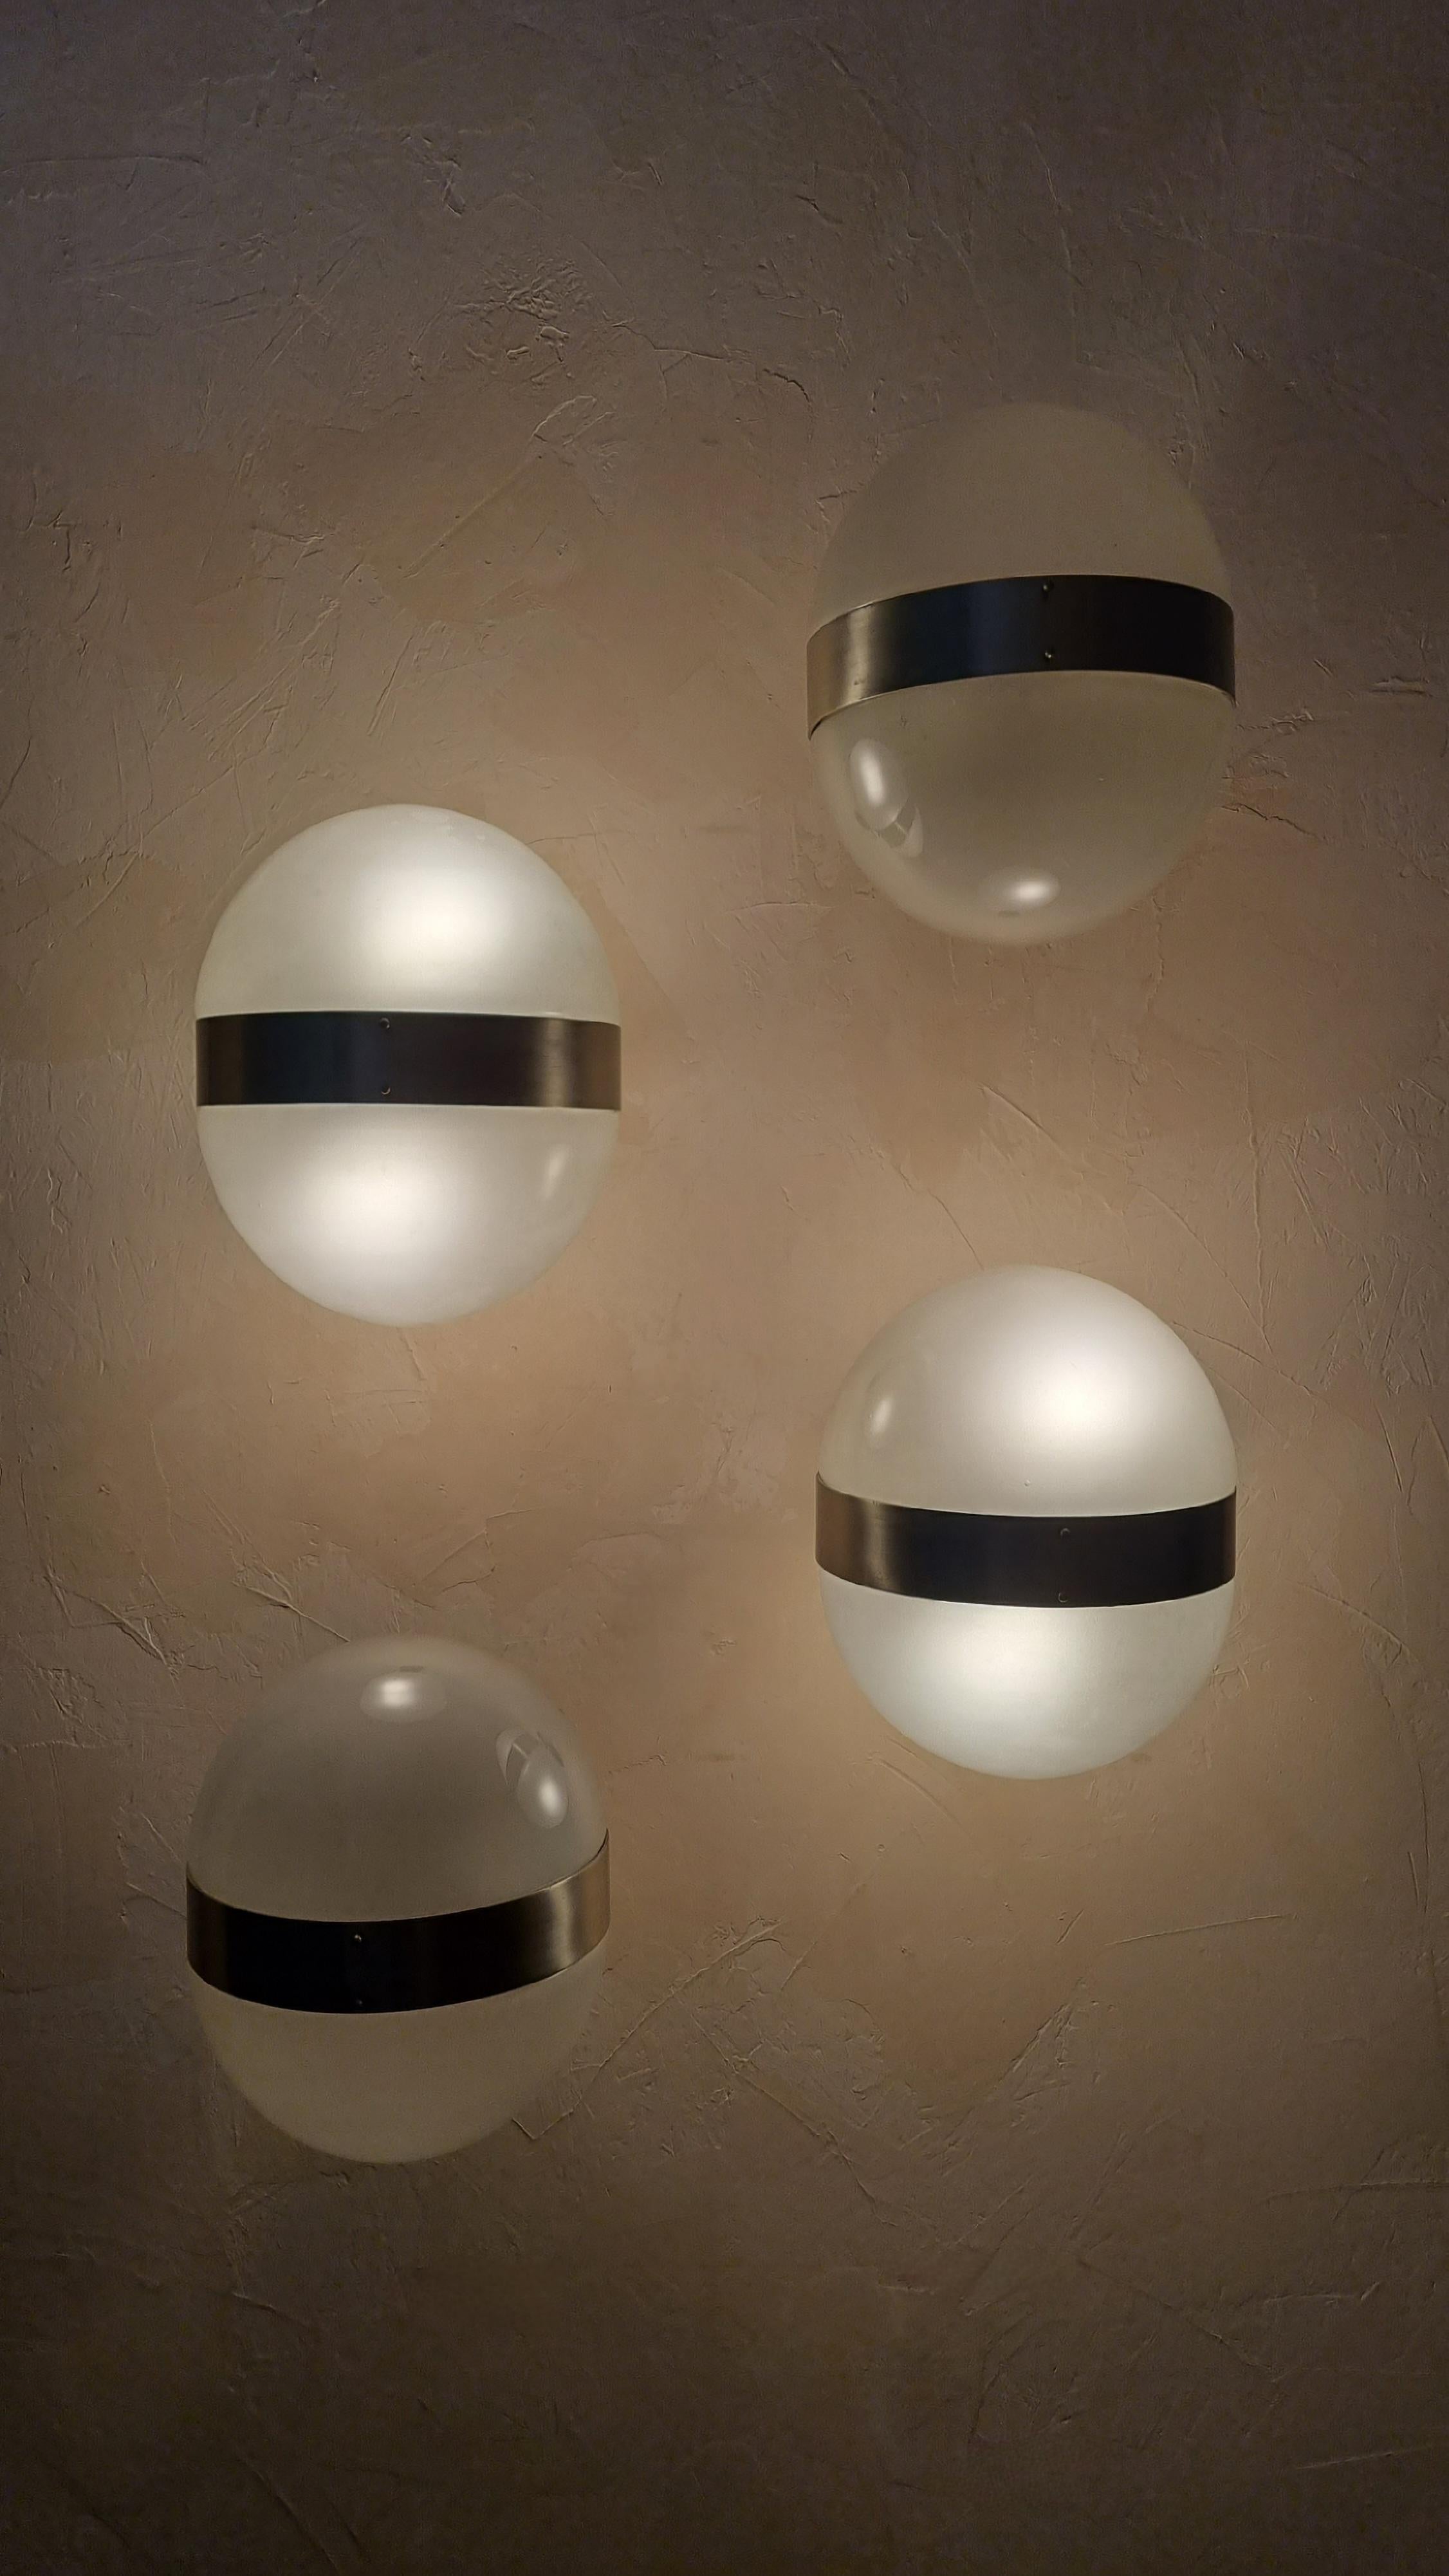 Ensemble de 4 appliques Clio conçues par Sergio Mazza pour Artemide en 1963, abat-jour en verre dépoli, structure en laiton nickelé, chaque lampe est en verre dépoli, structure en laiton nickelé, chaque lampe est en laiton nickelé  2 points lumineux